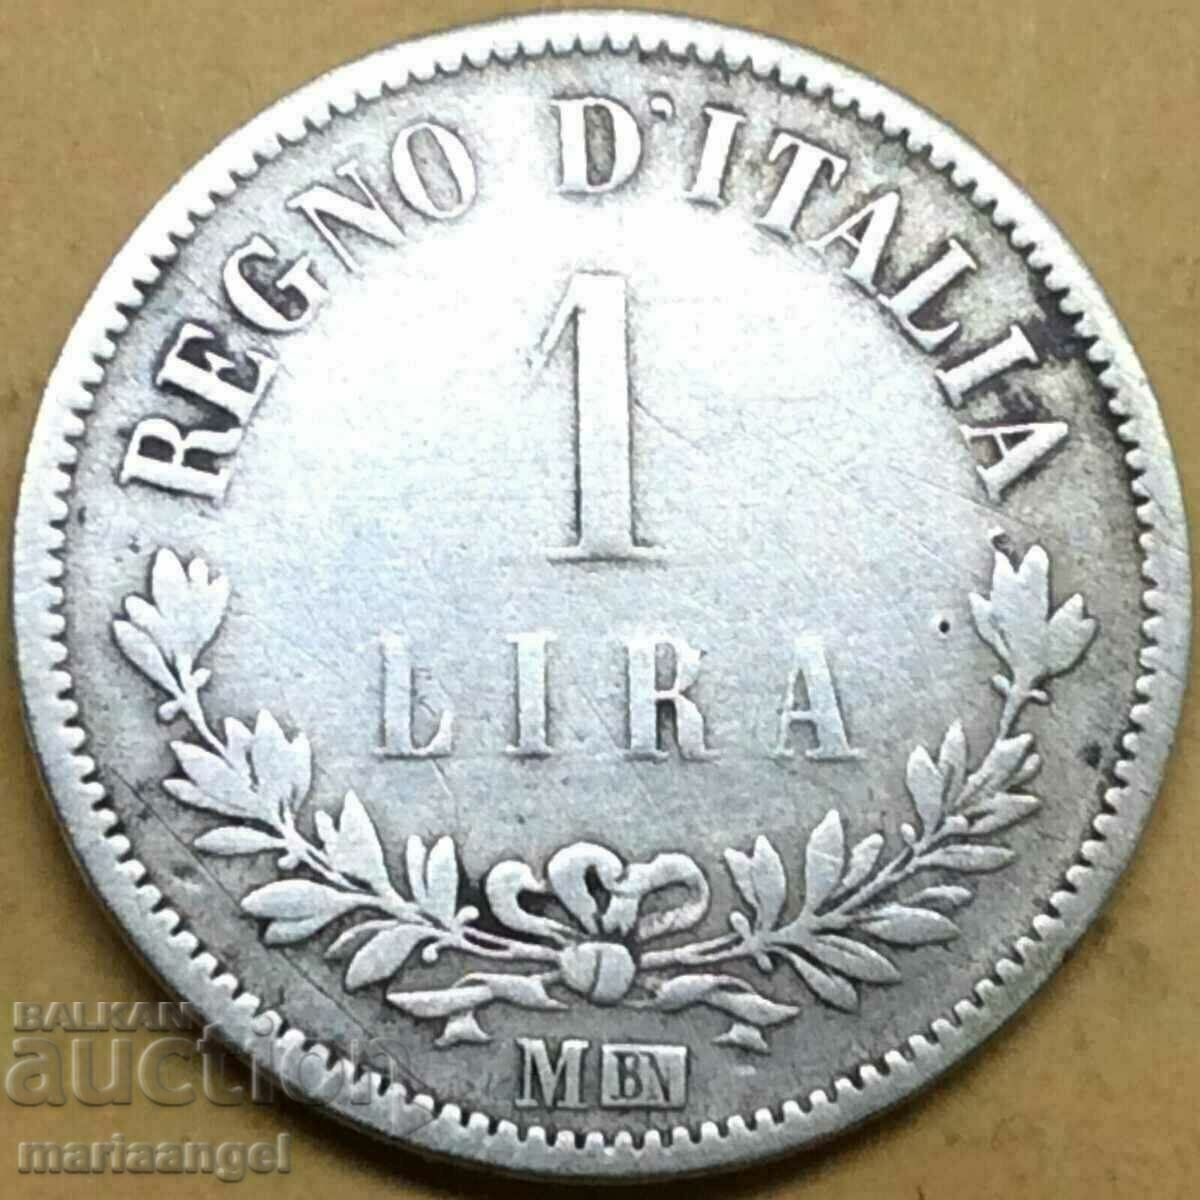 Италия 1 лира  "Digit" (Цифра) 1863 М - Милан  сребро